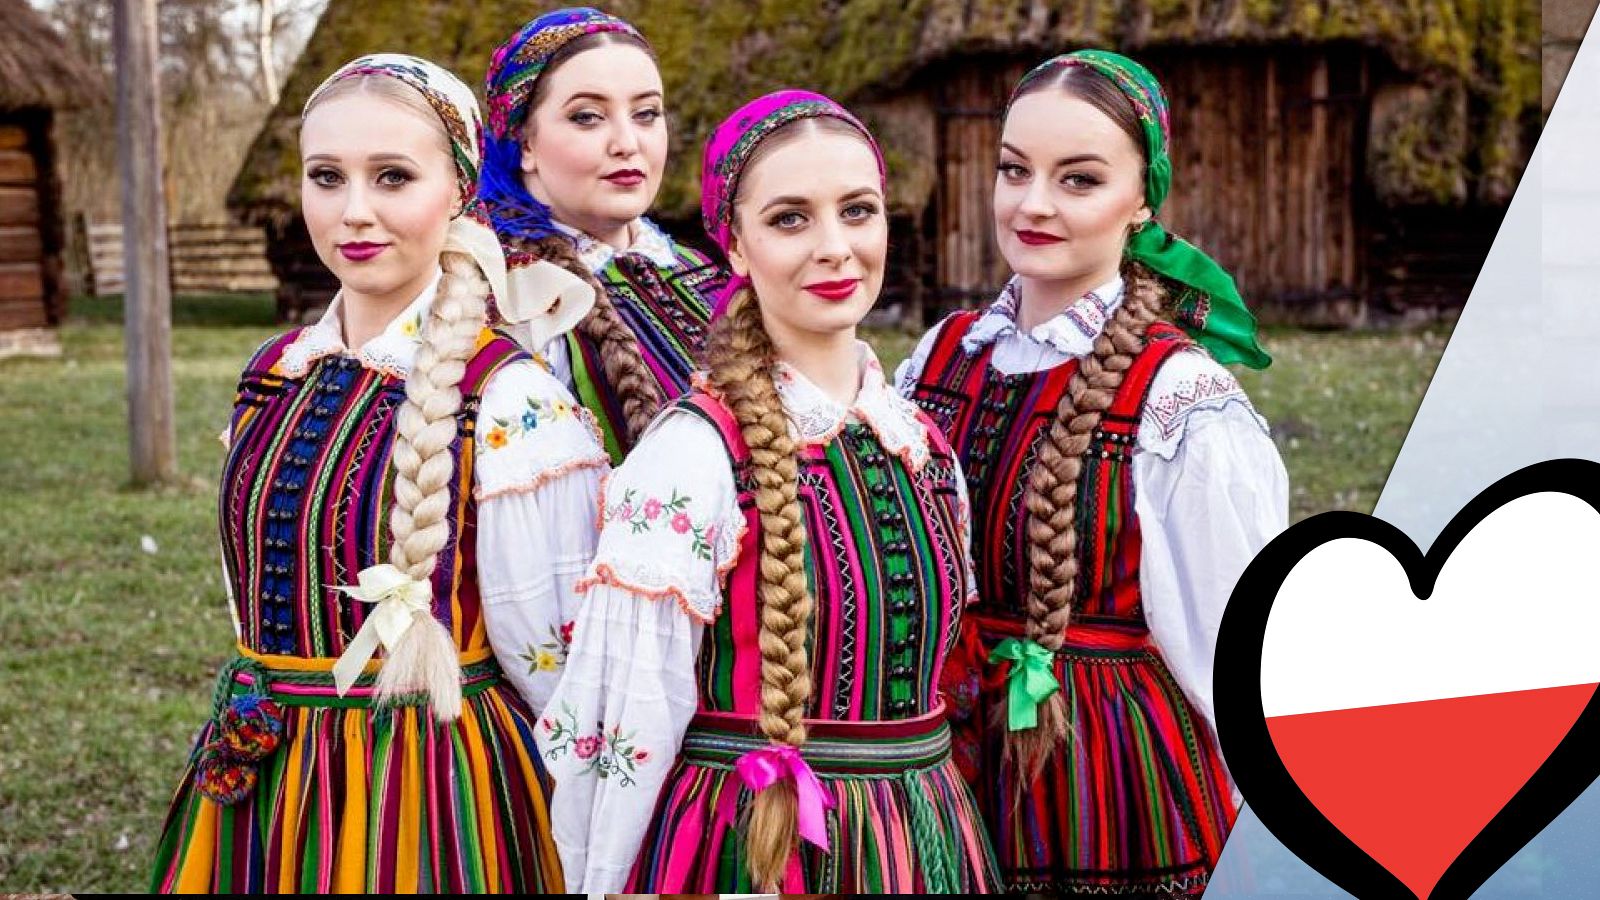 Eurovisión 2019 - Tulia (Polonia): Videoclip de "Pali sie"